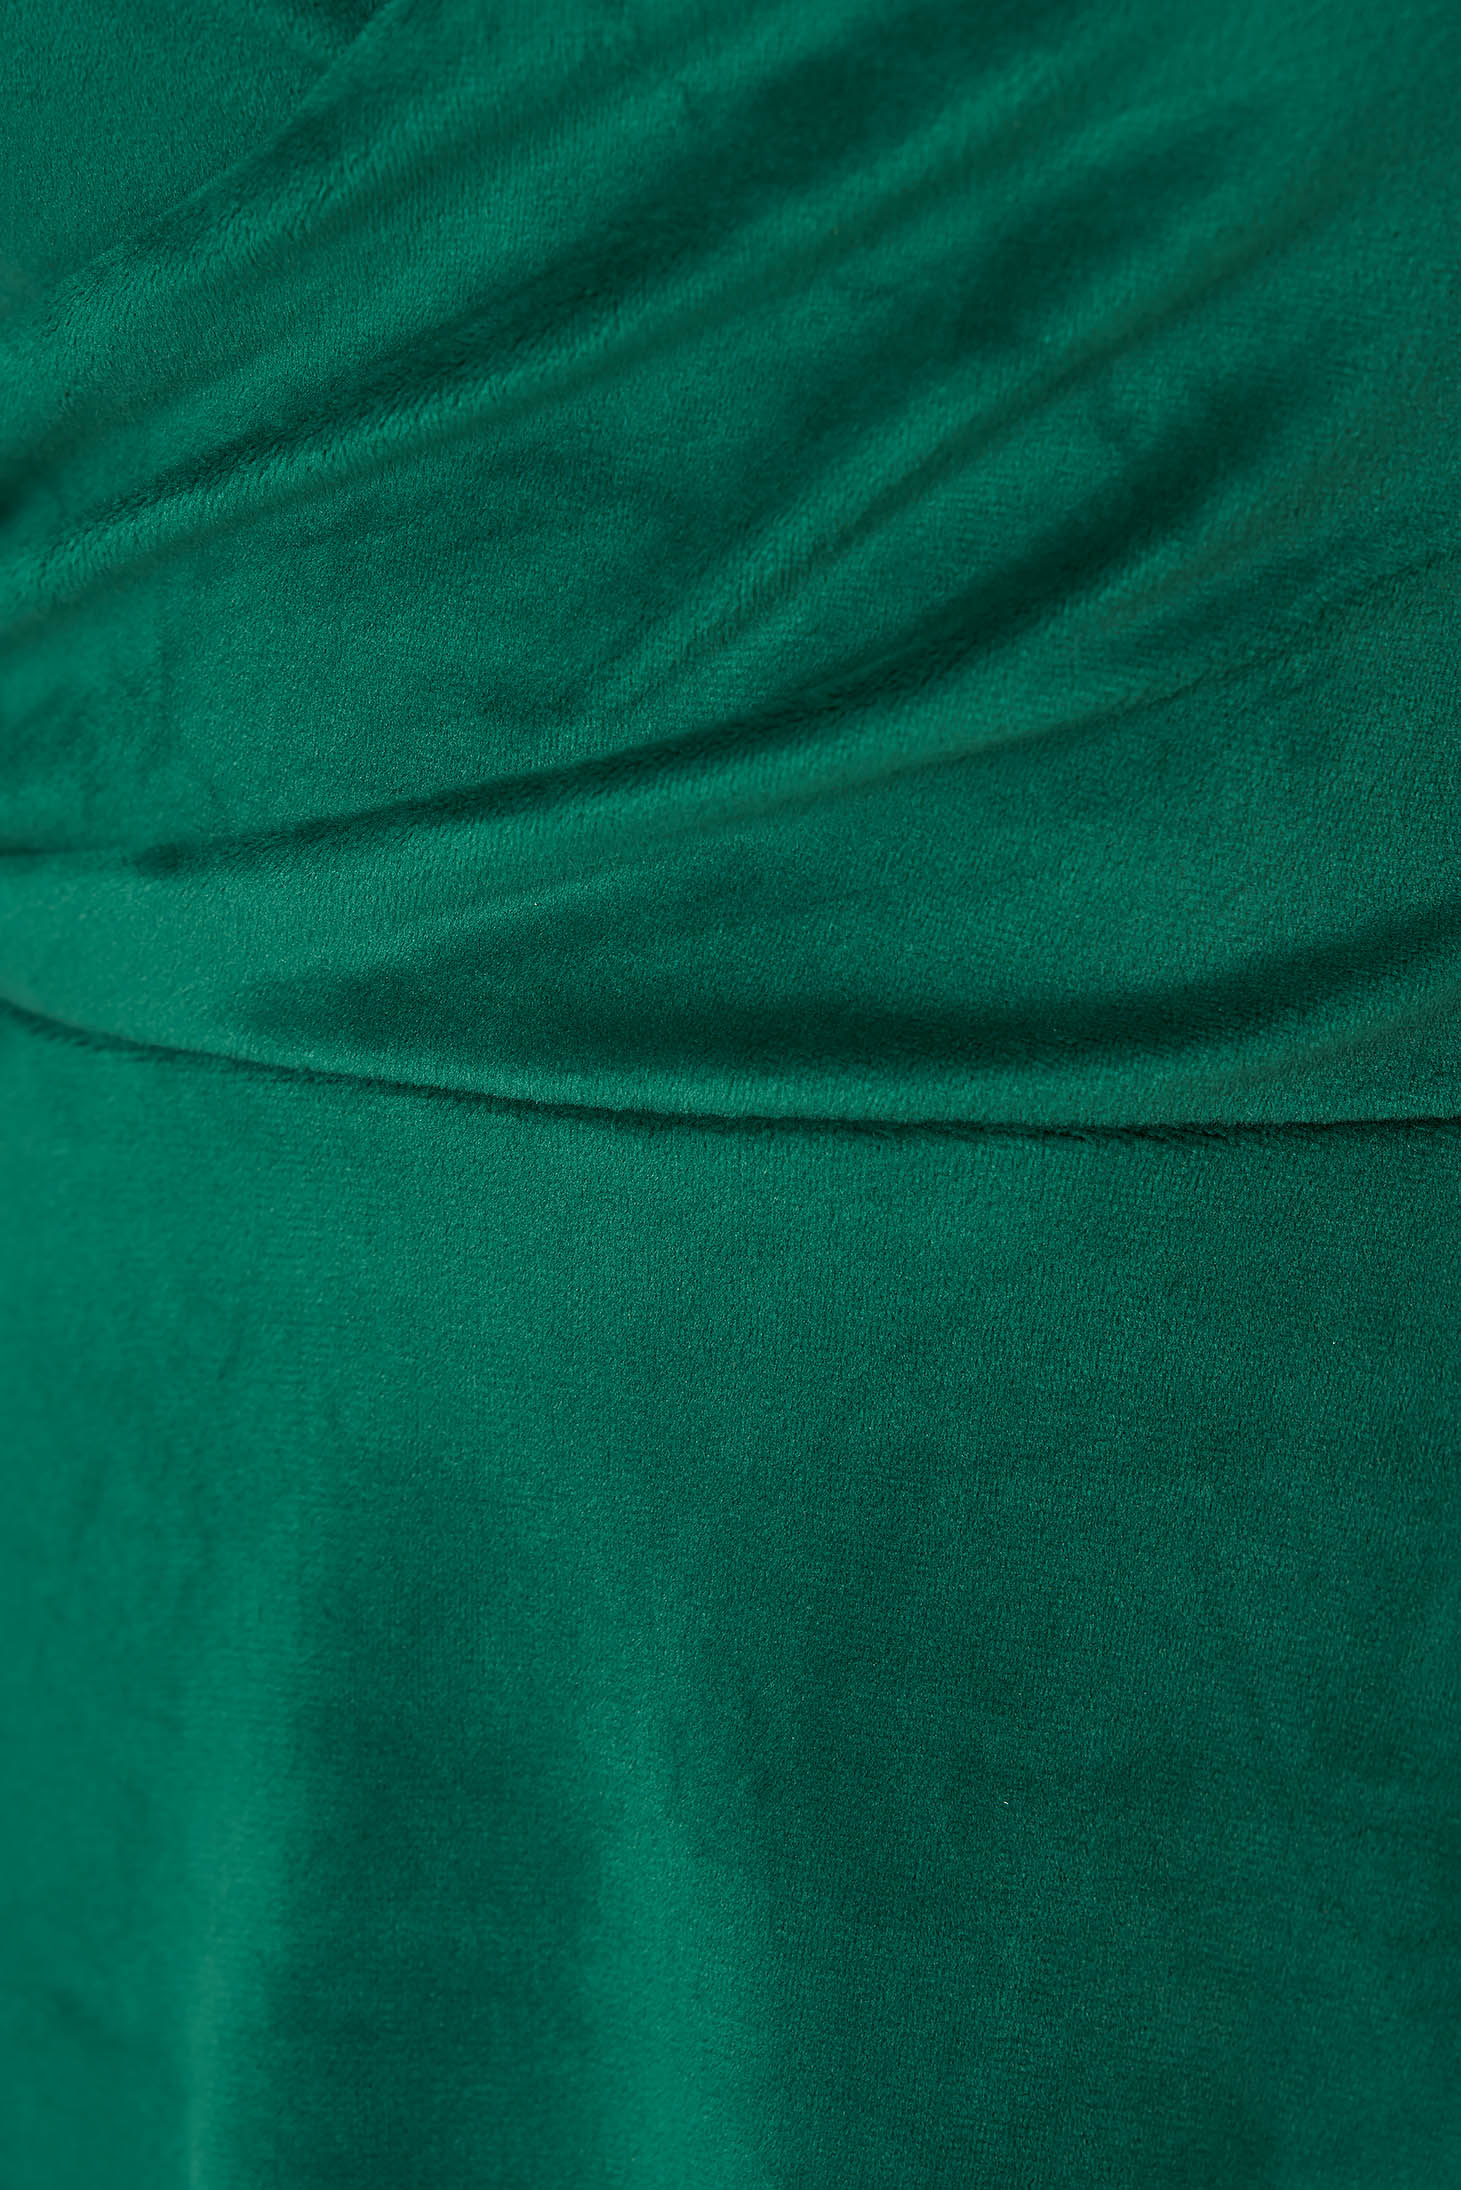 Lightgreen dress velvet cloche wrap over front - StarShinerS 5 - StarShinerS.com